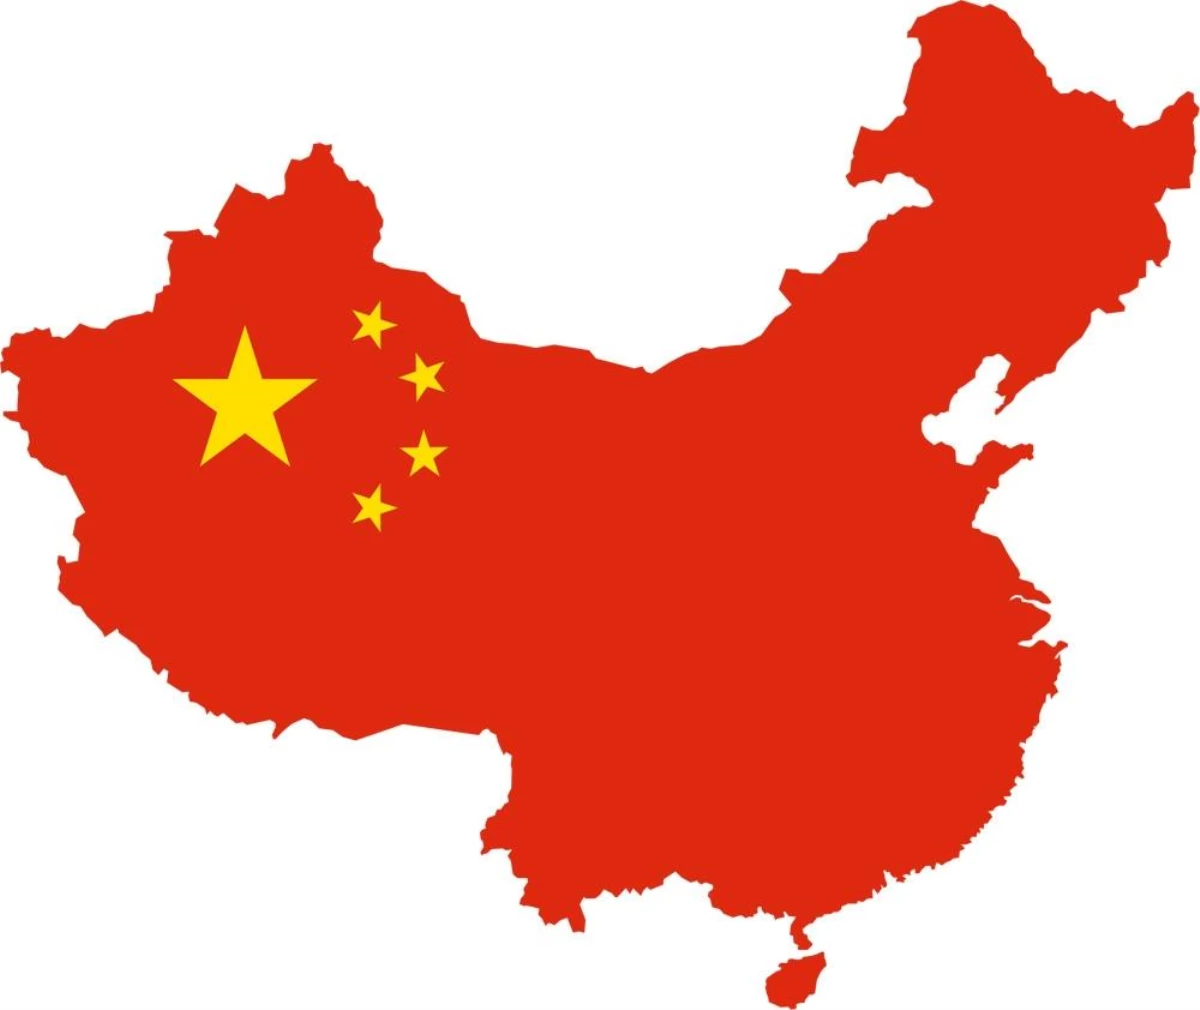 Çin: "Çin ekonomisinin uzun vadede istikrarlı gelişme eğiliminin değişmedi"